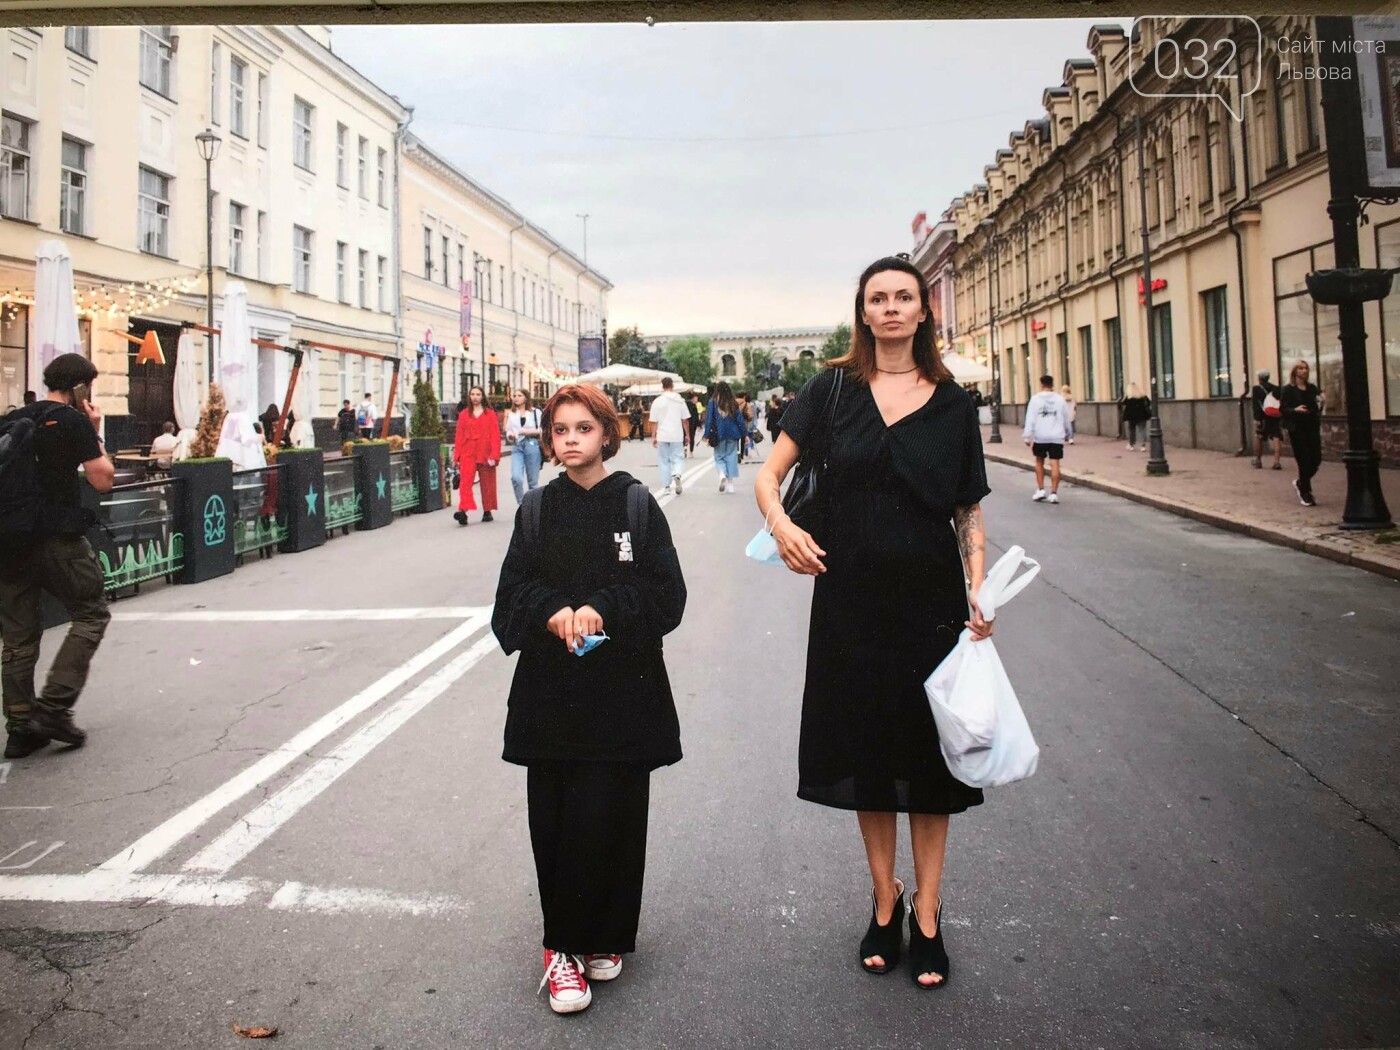 У Львові відкрили виставку про жінок "Її Справа"